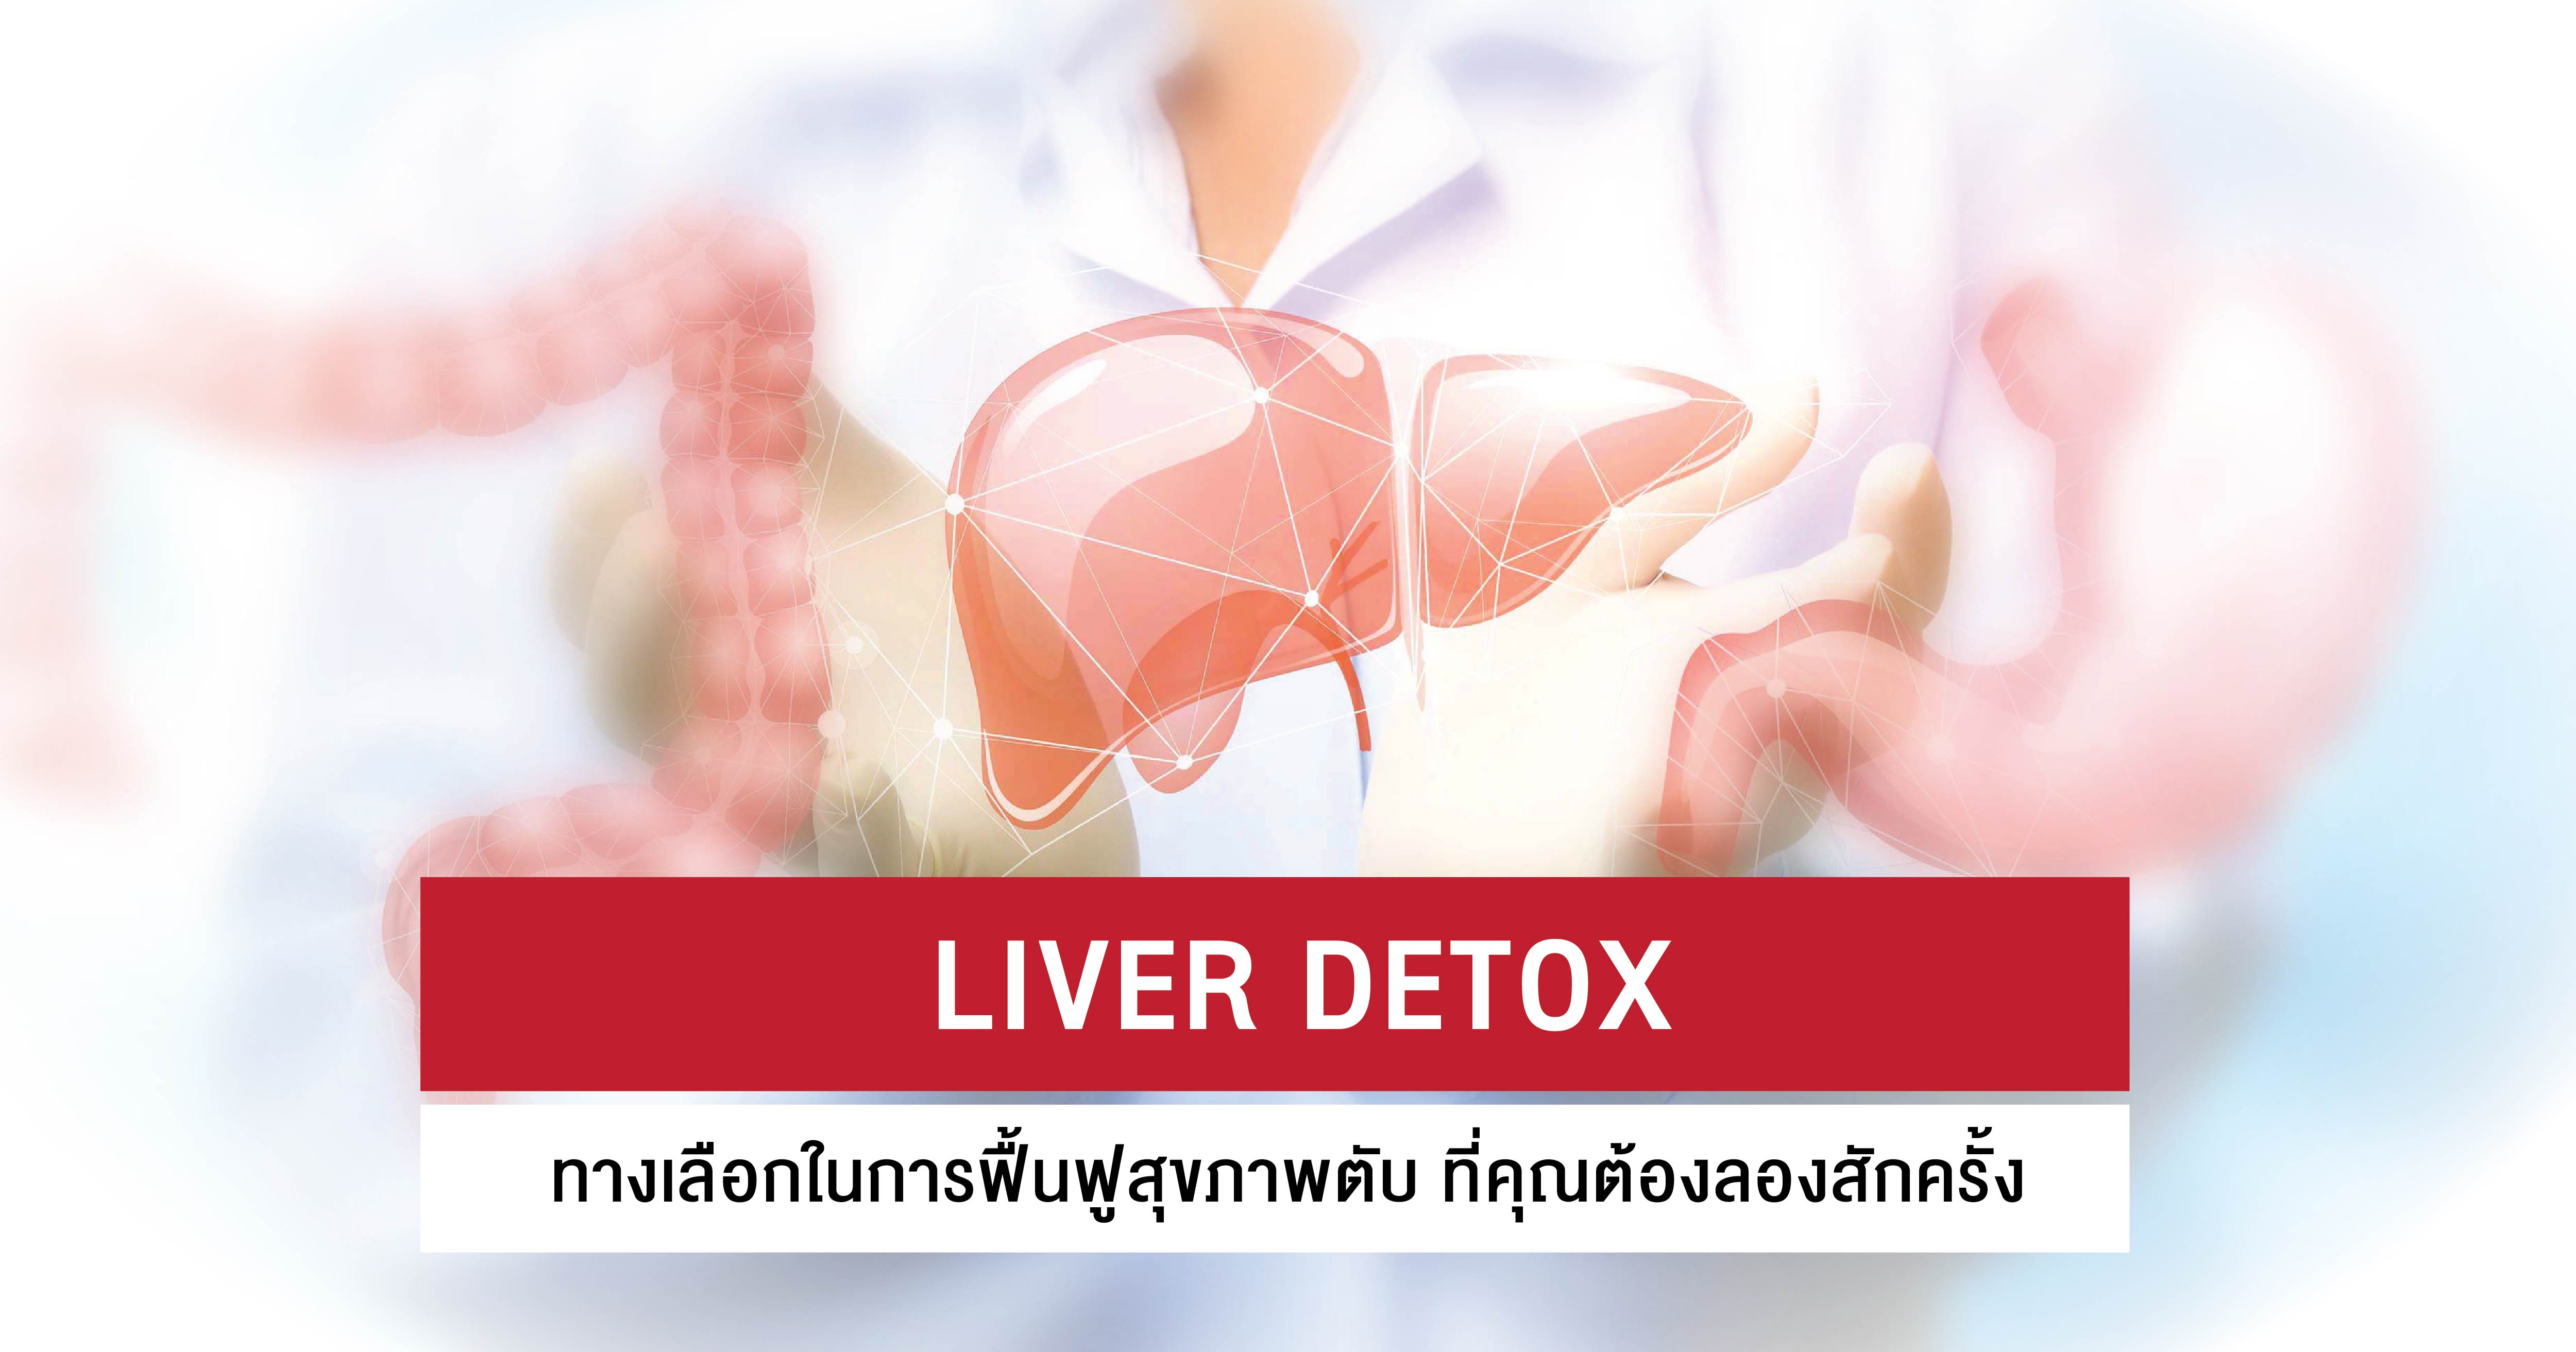 Liver Detox ประโยชน์คูณ 2 เพื่อขับสารพิษตับและเป็นสารต้านอนุมูลอิสระในเซลล์